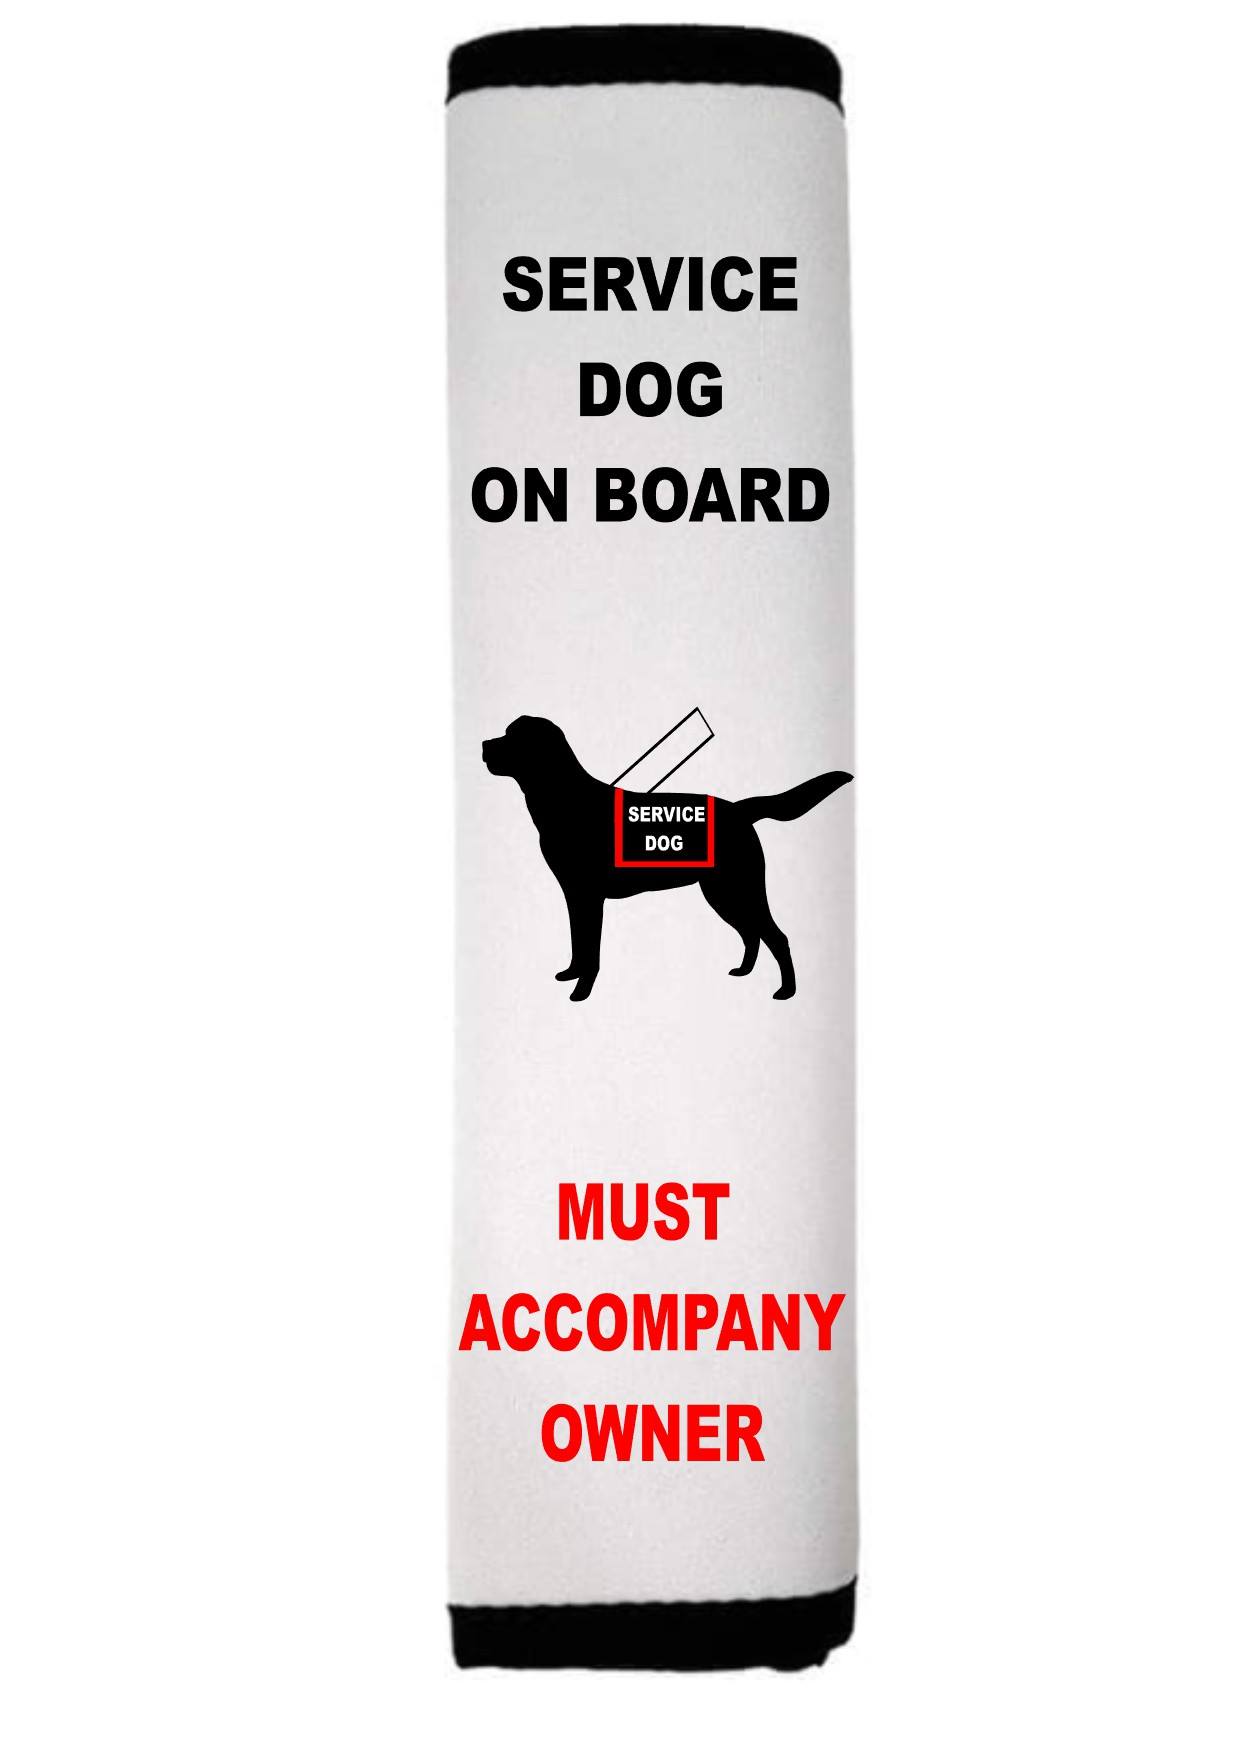 Service Dog on Board